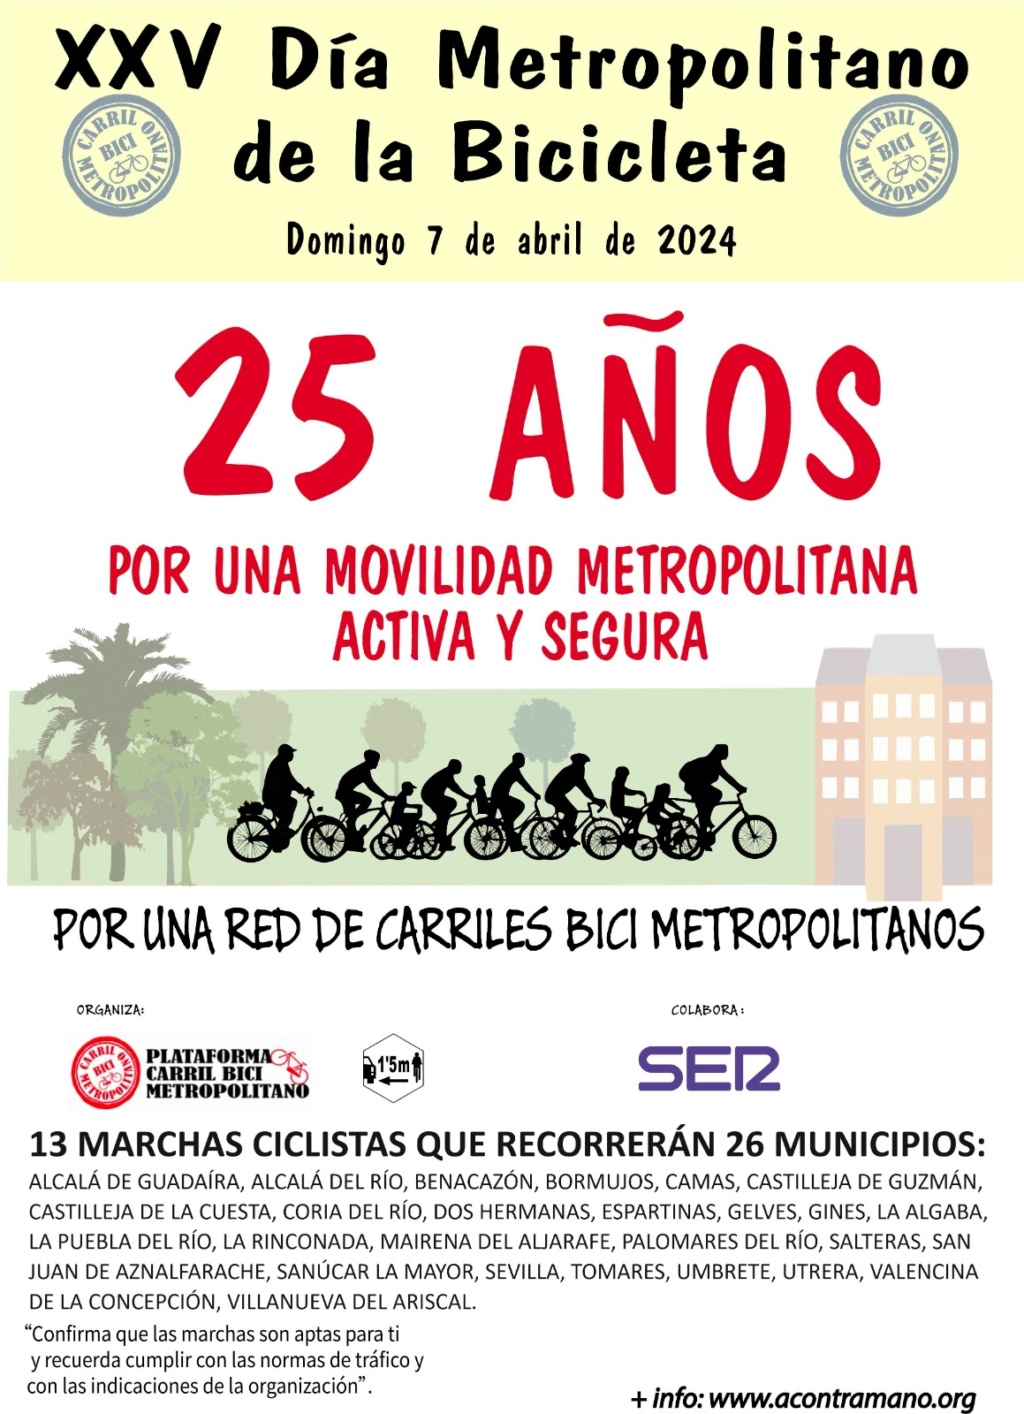 Domingo, 7/4/2024, XXV Día Metropolitano de la Bicicleta Genera10